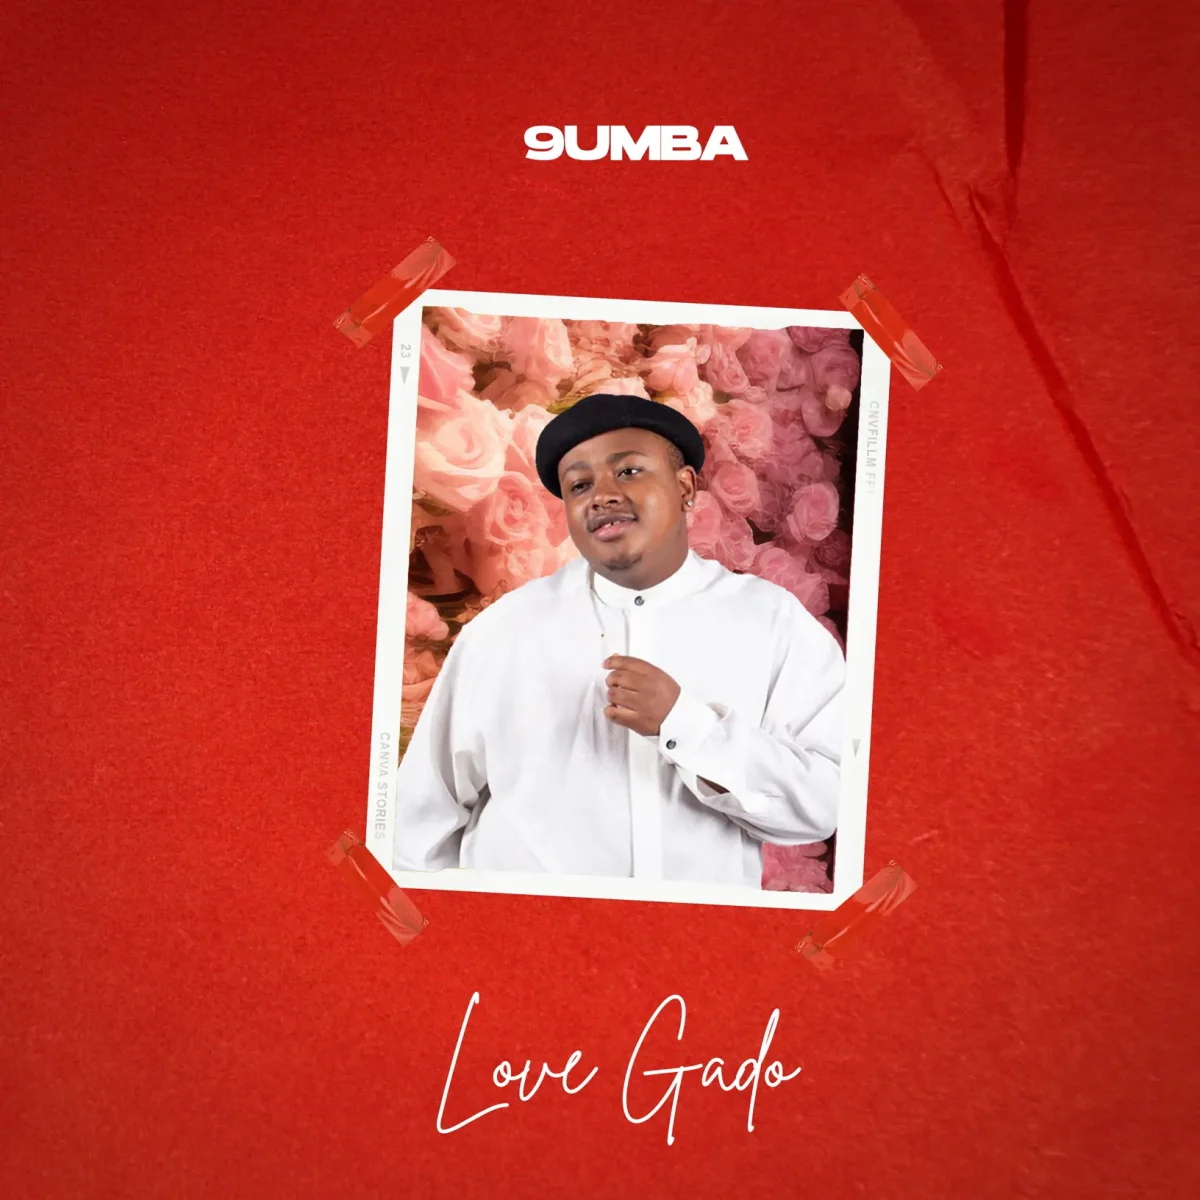 9Umba - Love Gado Album 1